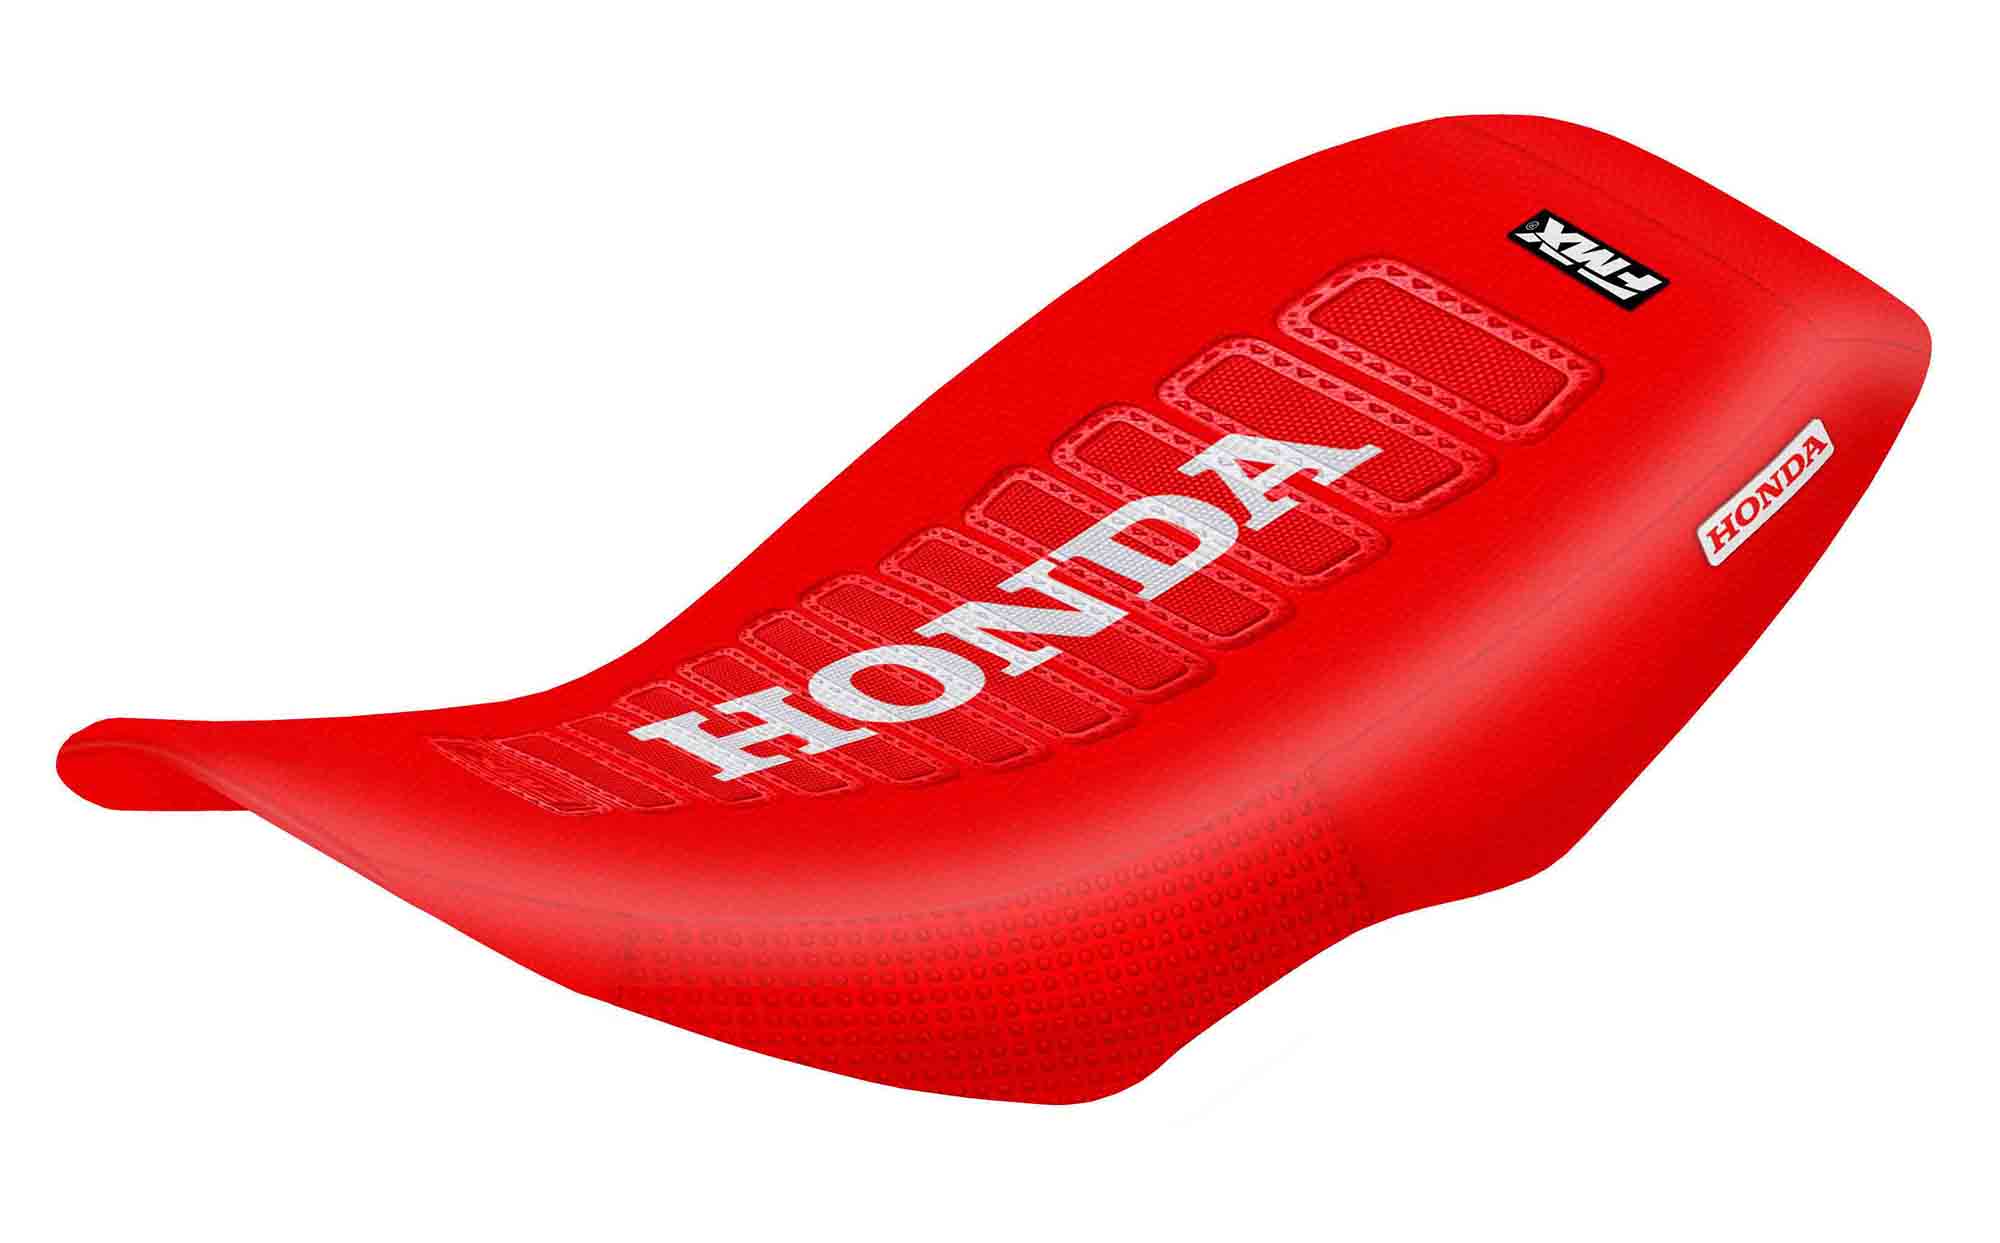 Funda Asiento Honda Trx 300 - 01/06 Ultra Grip Series. Es una obra de arte artesanal fabricada en Argentina, nuestros productos son de la mejor calidad.